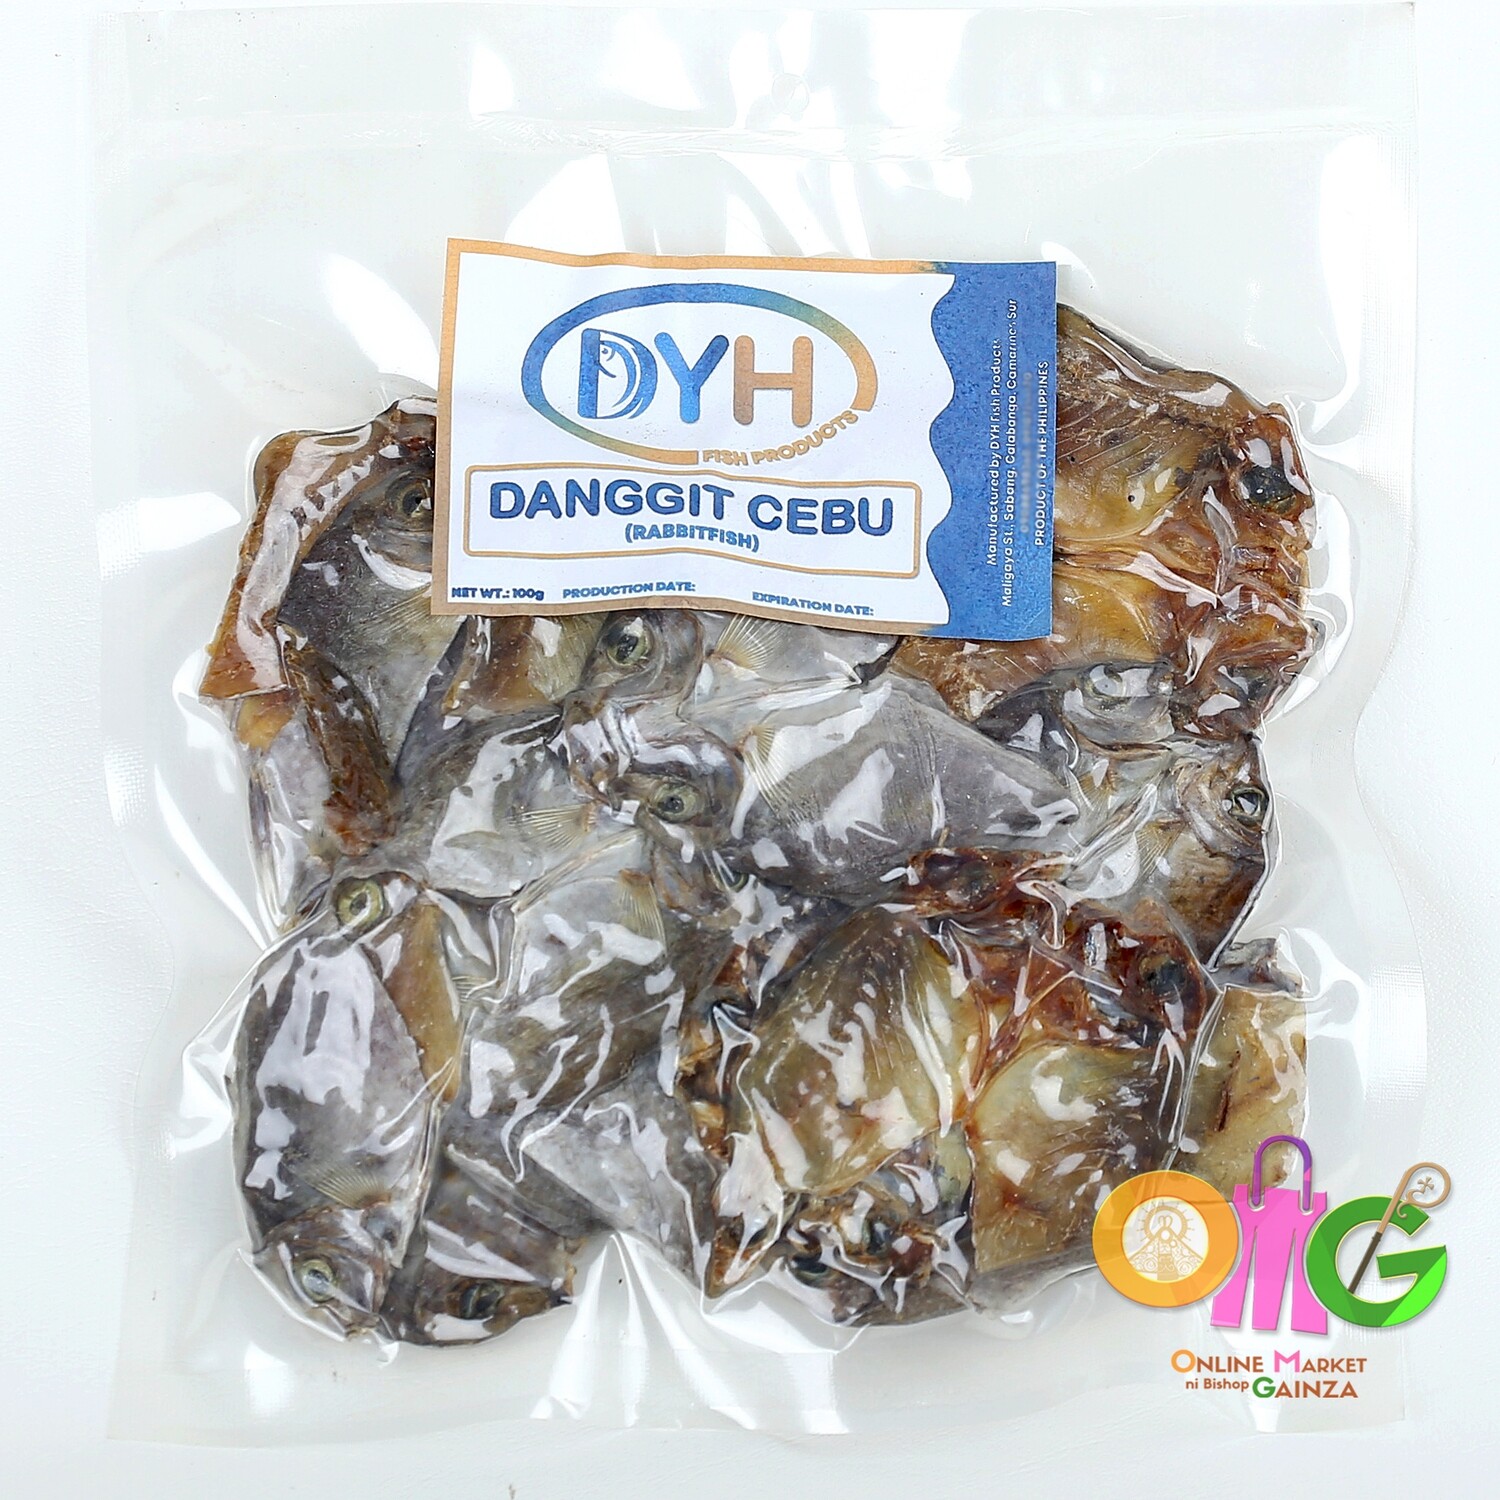 DYH Fish Products - Danggit Cebu